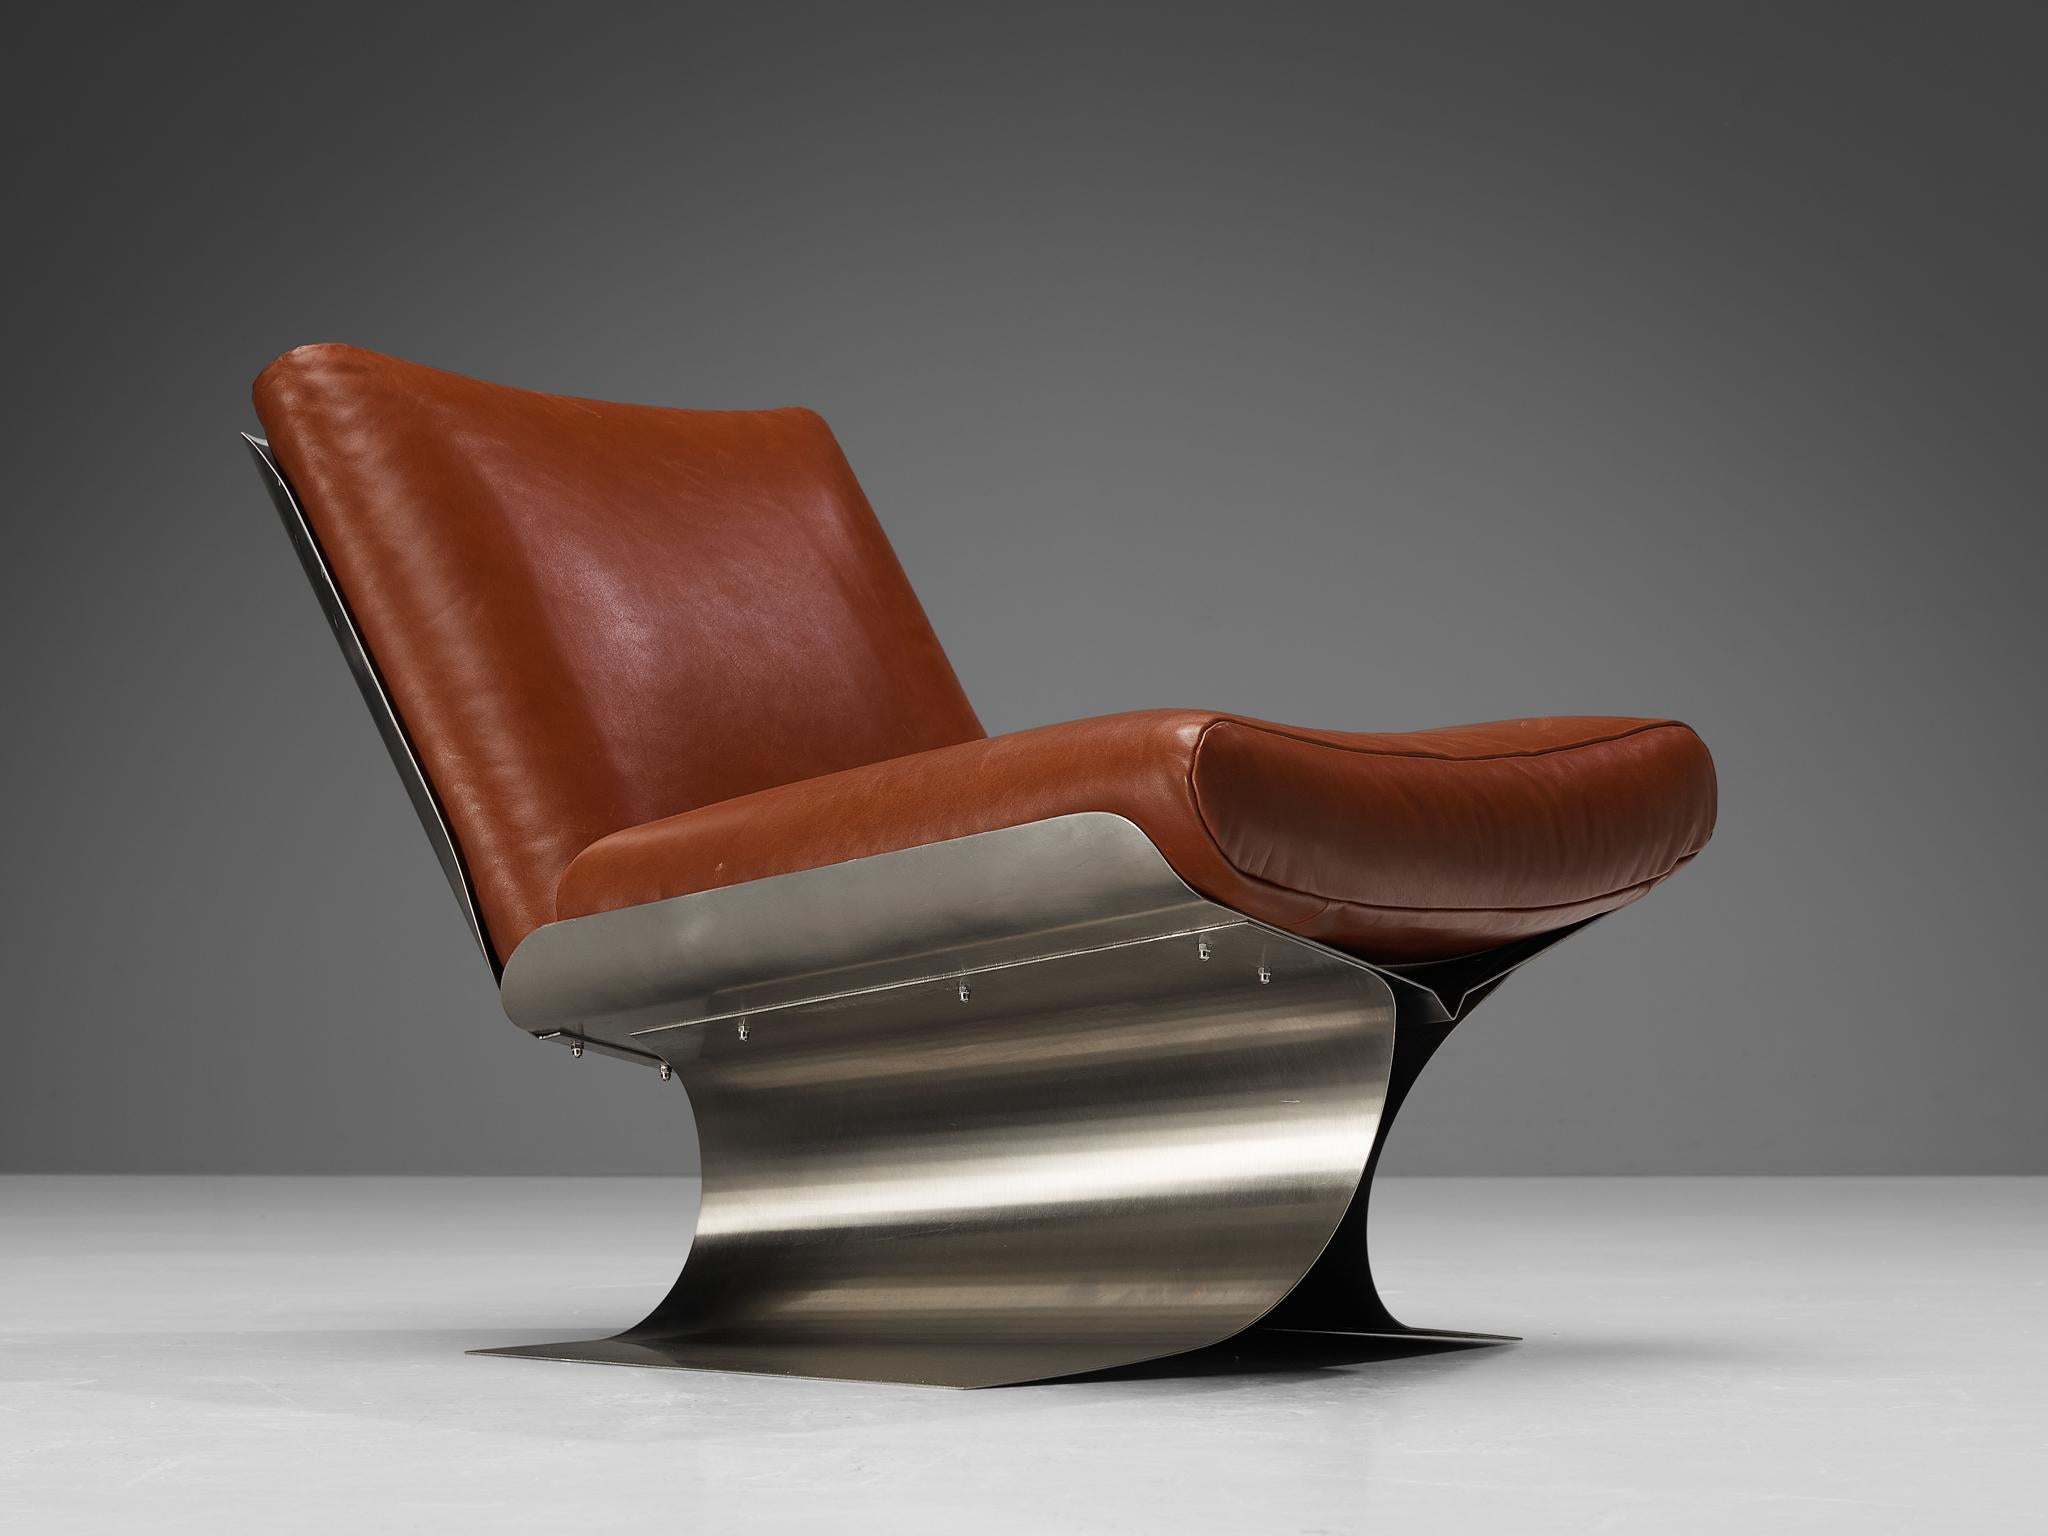 Xavier Féal, chaise longue, acier brossé, cuir, France, vers 1970

Rare chaise longue conçue par l'architecte d'intérieur français Xavier Féal dans les années 1970. Cette chaise lisse et sculpturale est fabriquée en acier brossé, le matériau